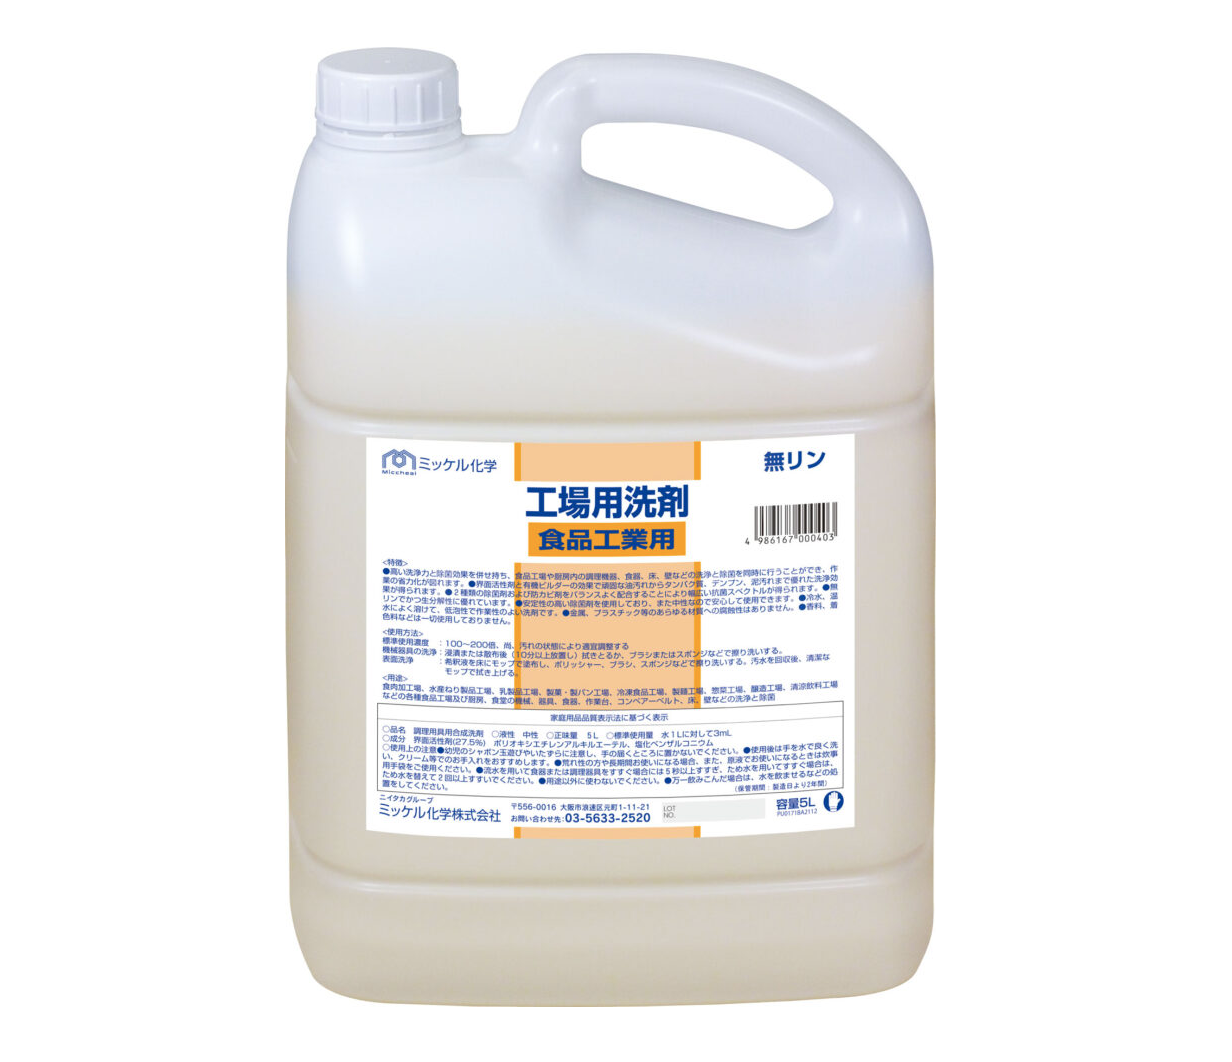 工場用洗剤食品工業用 5L×2本入 ＃動植物性油脂やタンパク質、でんぷんなどの食品工場内の汚れに最適です。カチオン系除菌剤配合です。＃ミッケル化学 – 